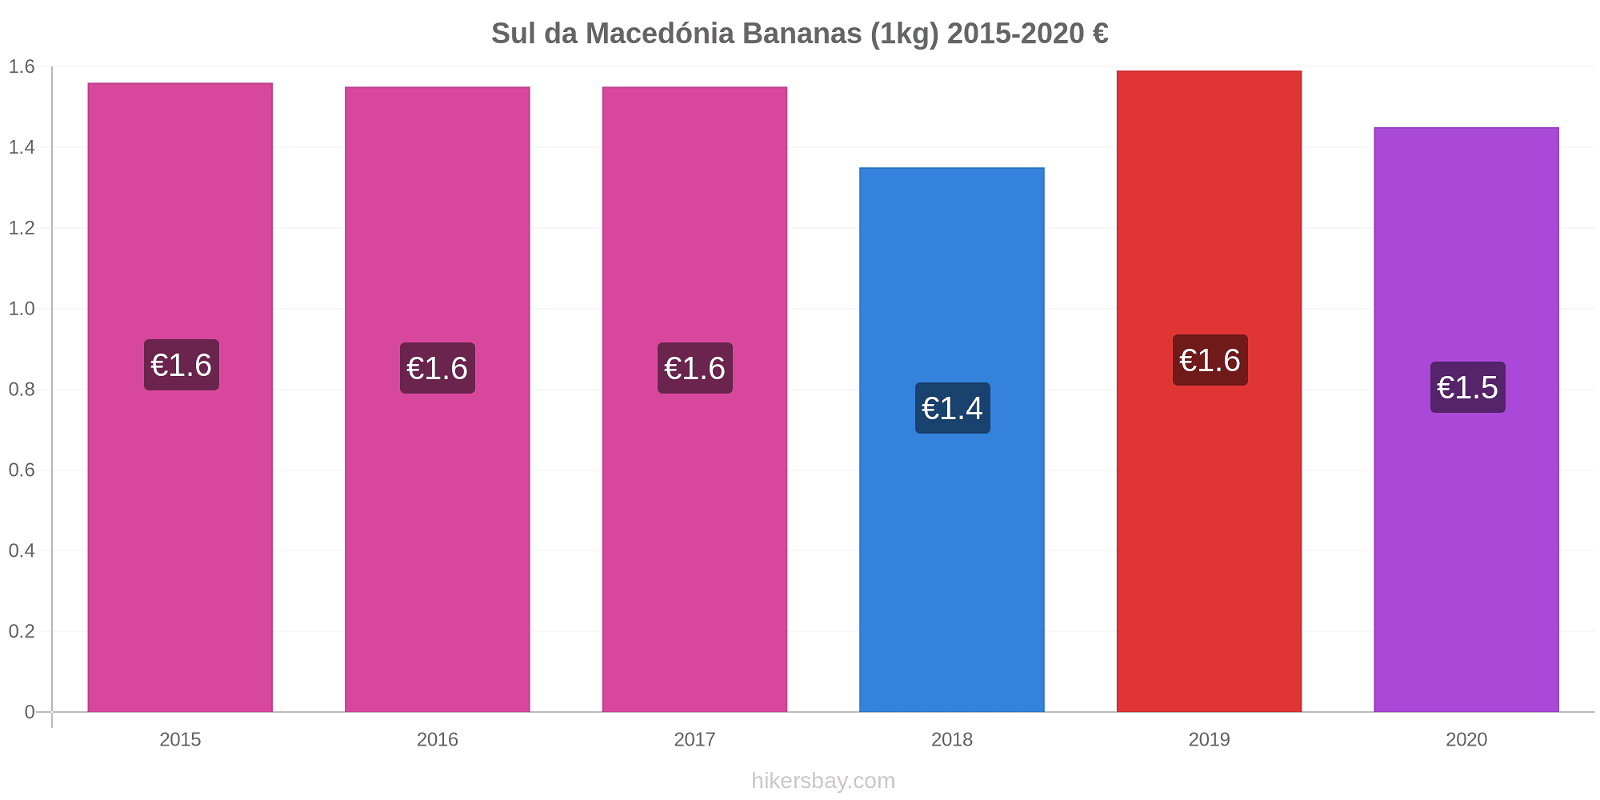 Sul da Macedónia variação de preço Banana (1kg) hikersbay.com